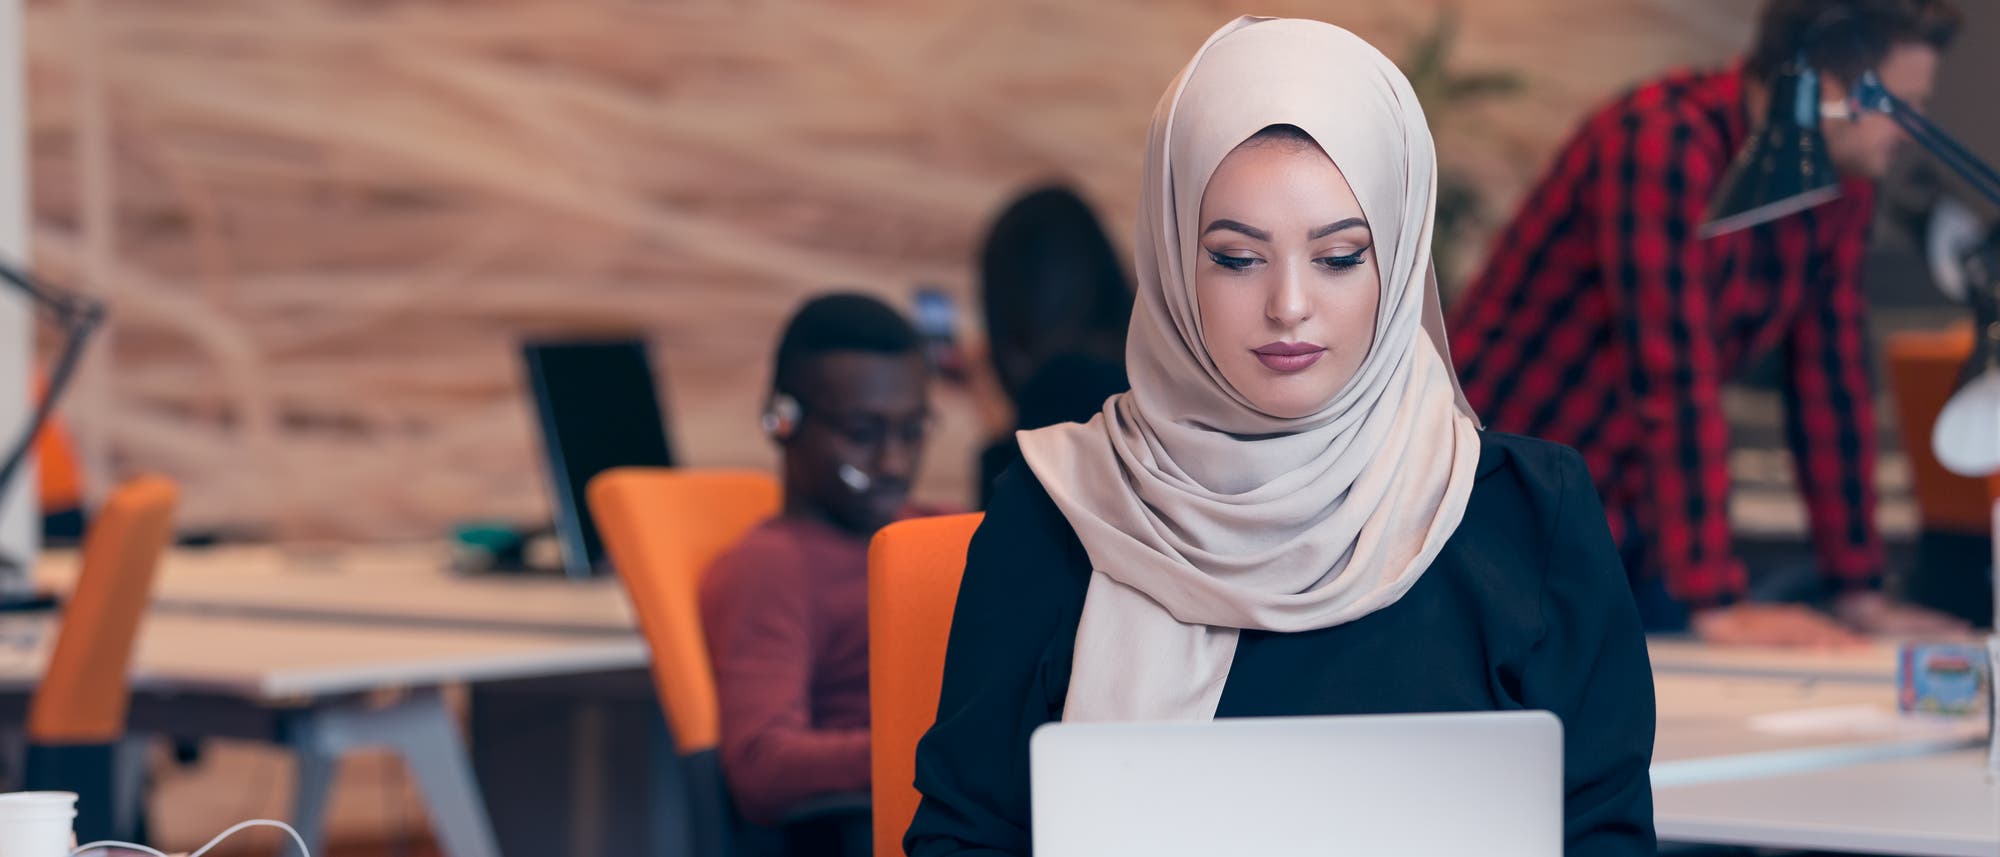 Eine muslimische Frau arbeitet konzentriert am Computer